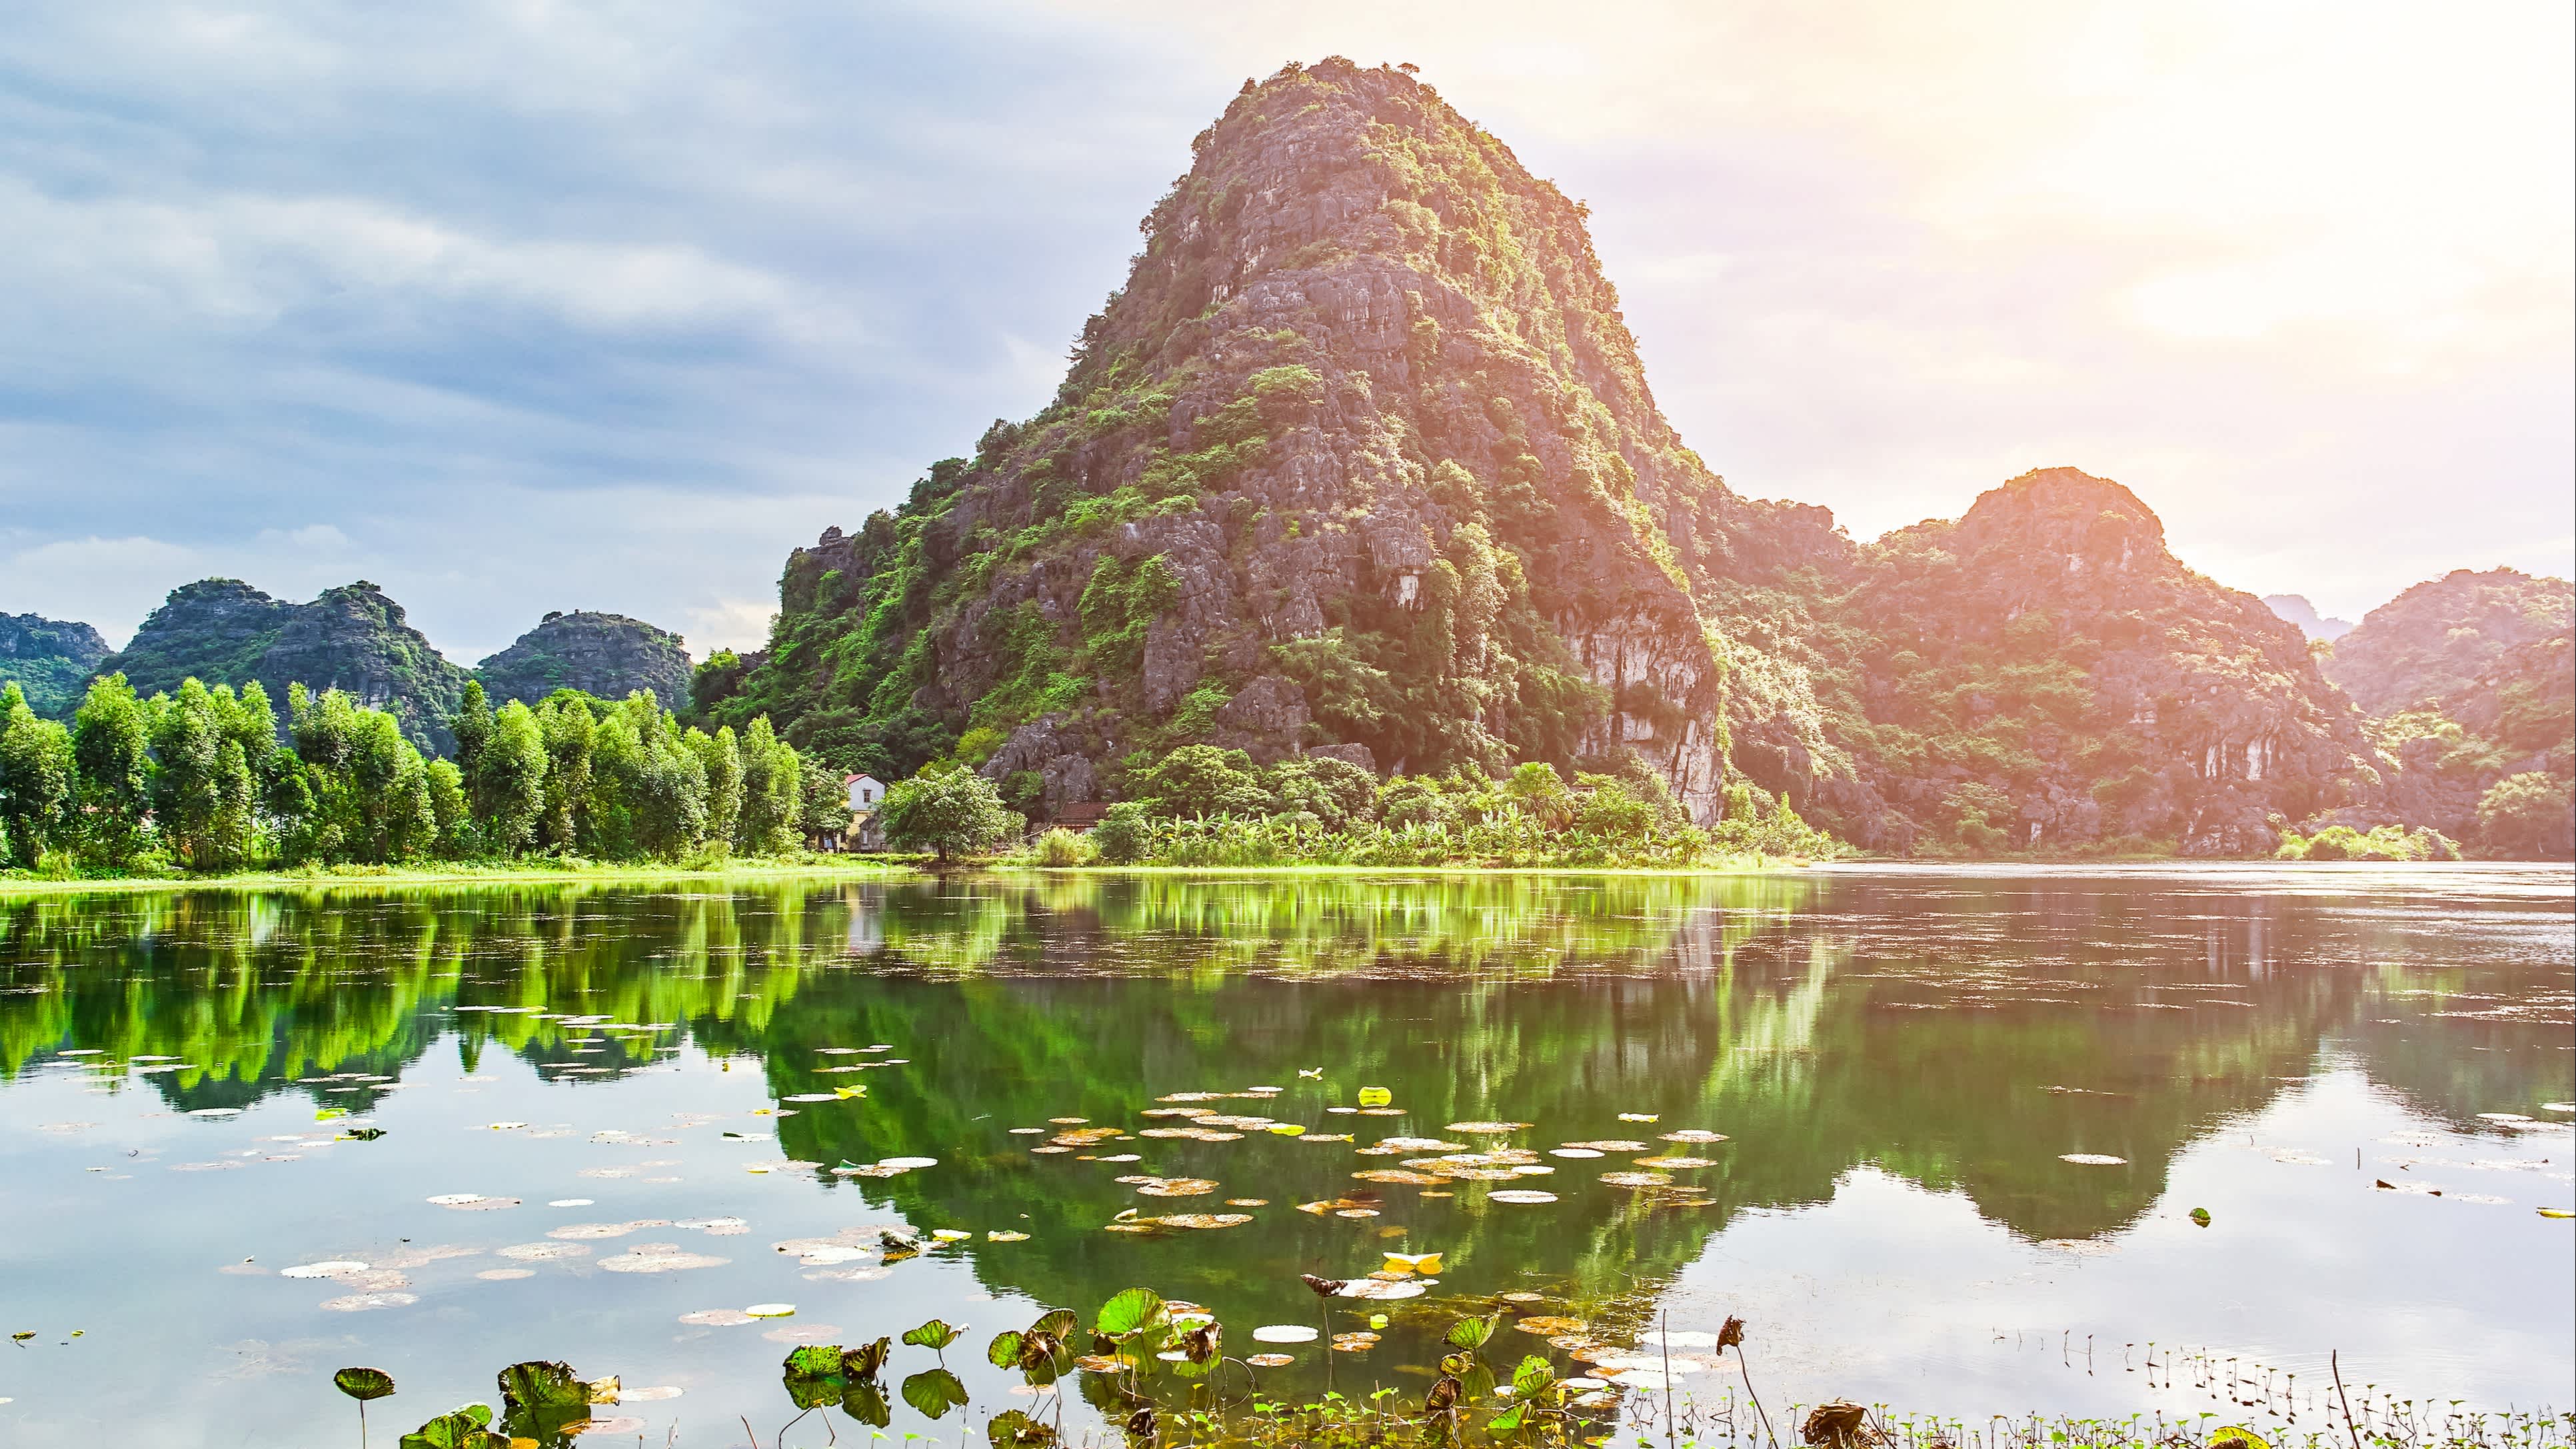 Vue des montagnes verdoyantes au bord de l'eau dans la région de Ninh Binh, Vietnam.